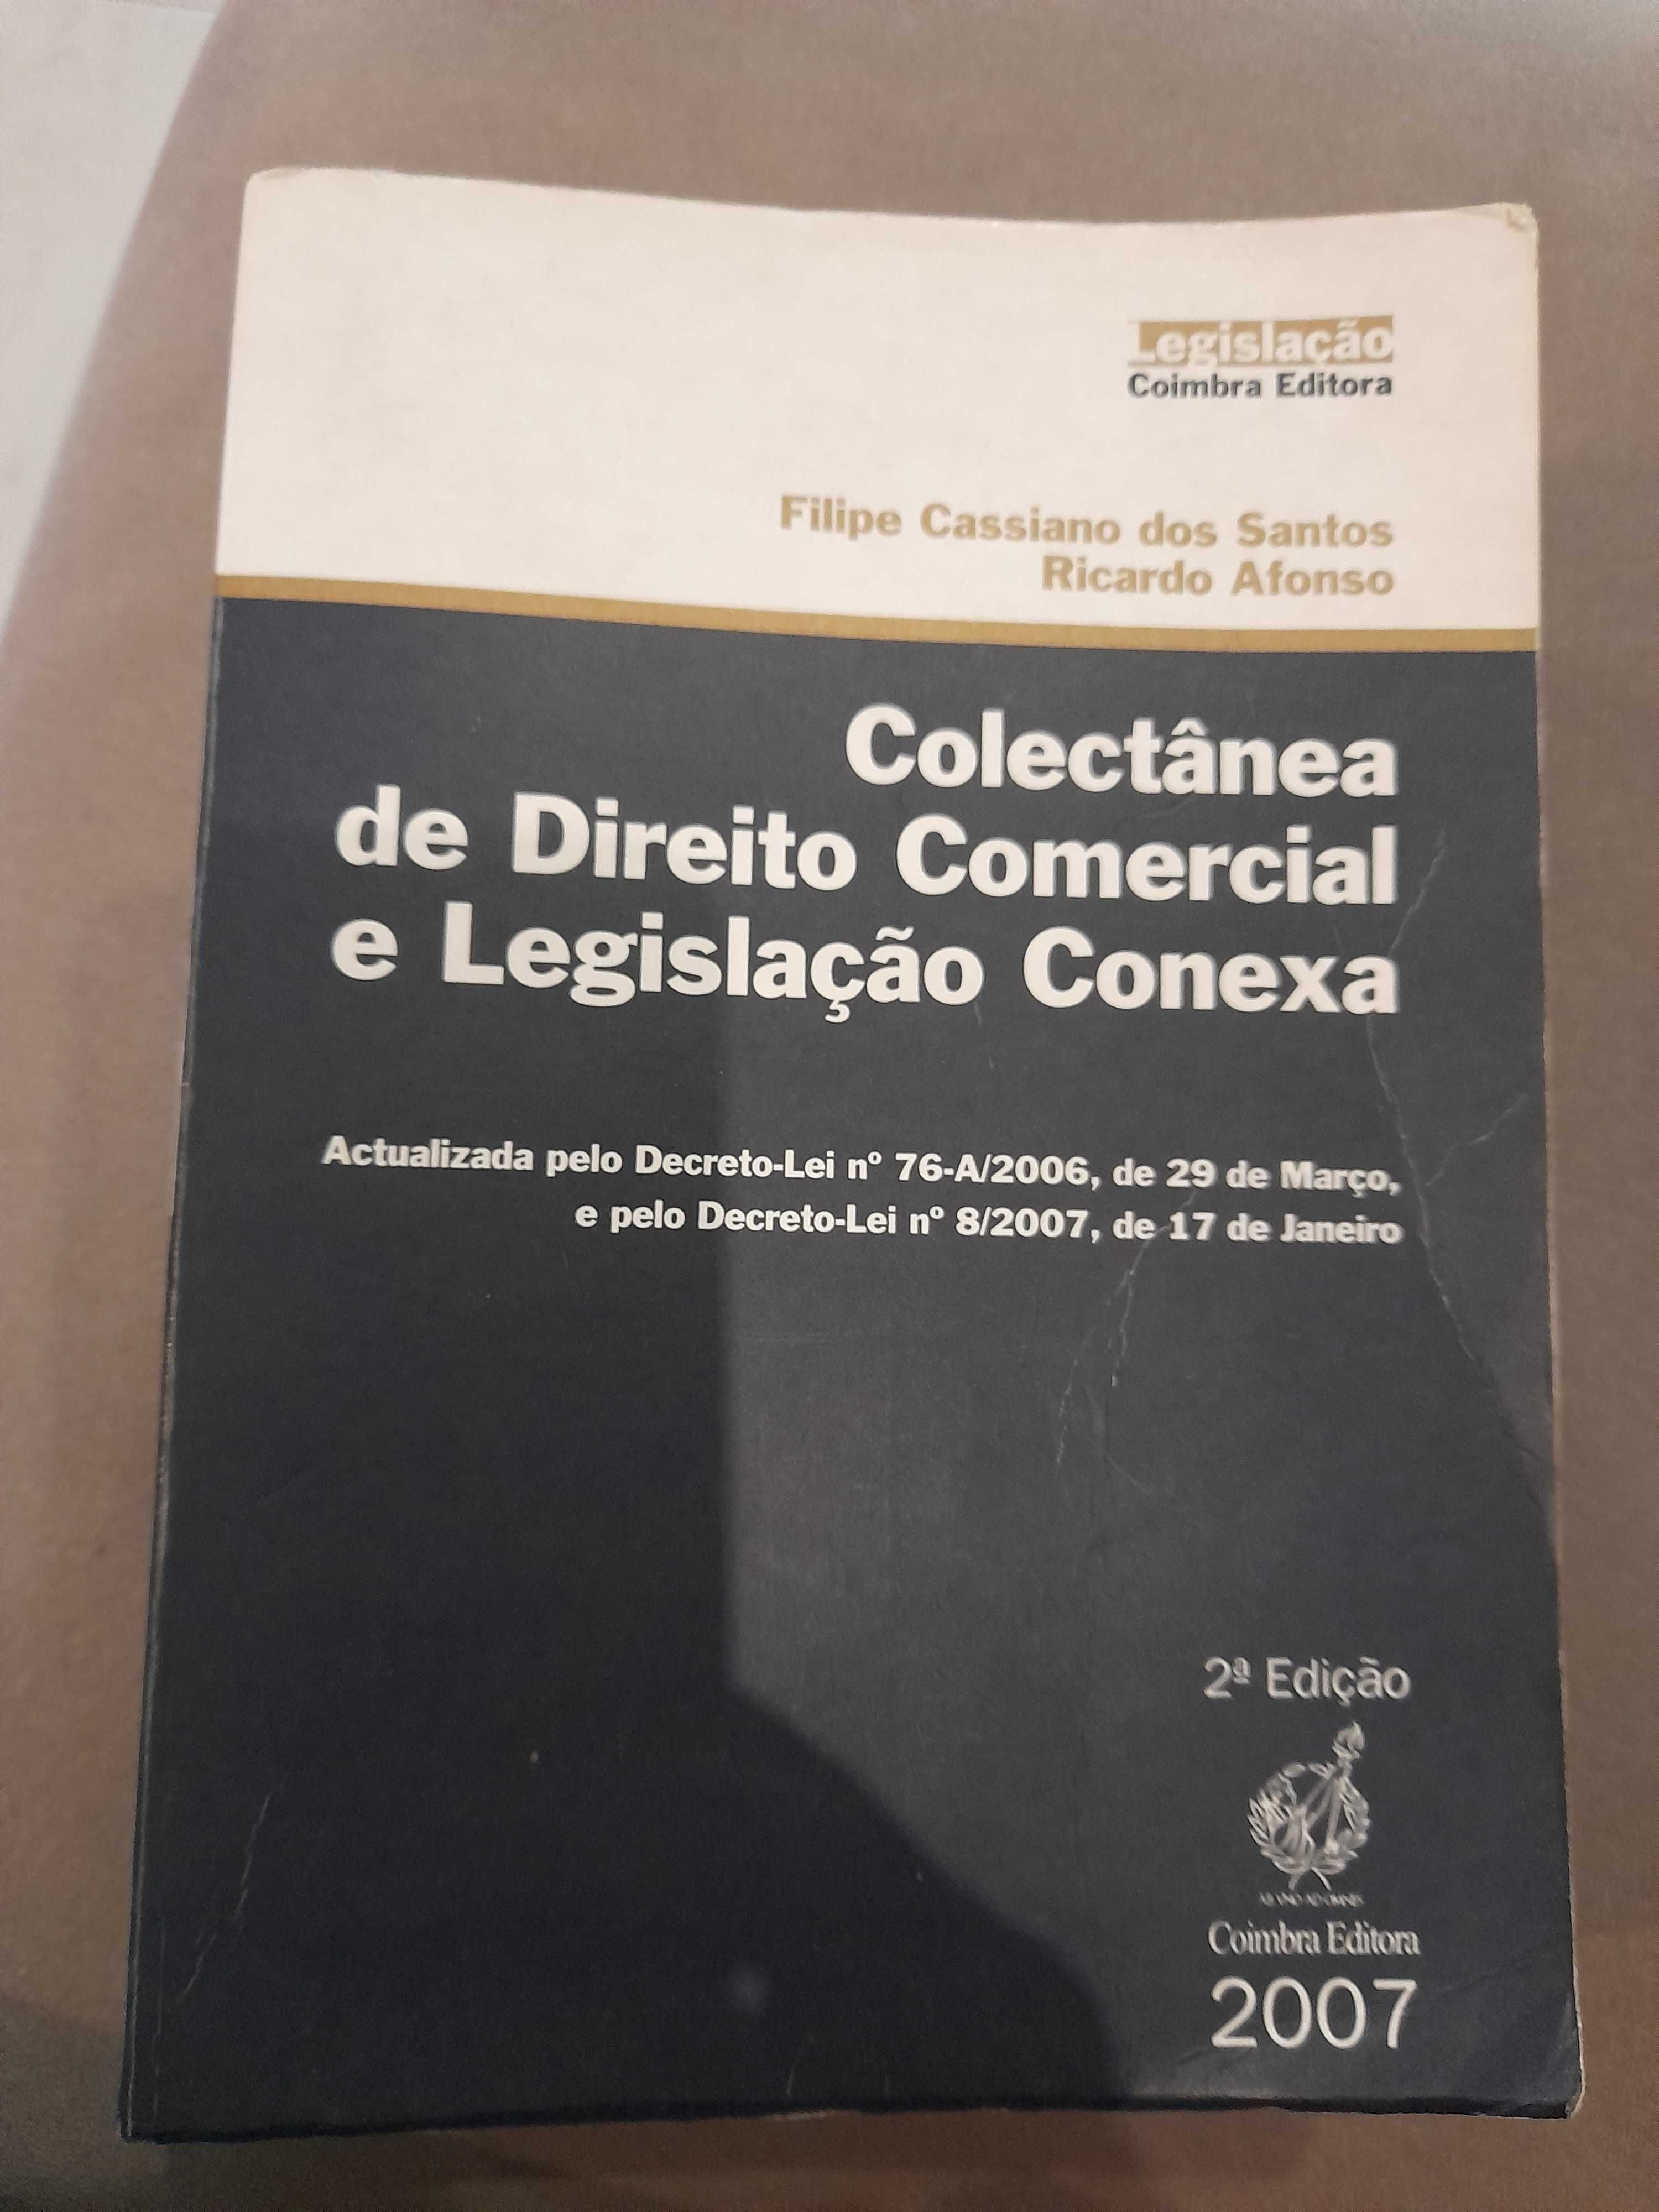 Livro "Colectânea de Direito Comercial e Legislação Conexa"